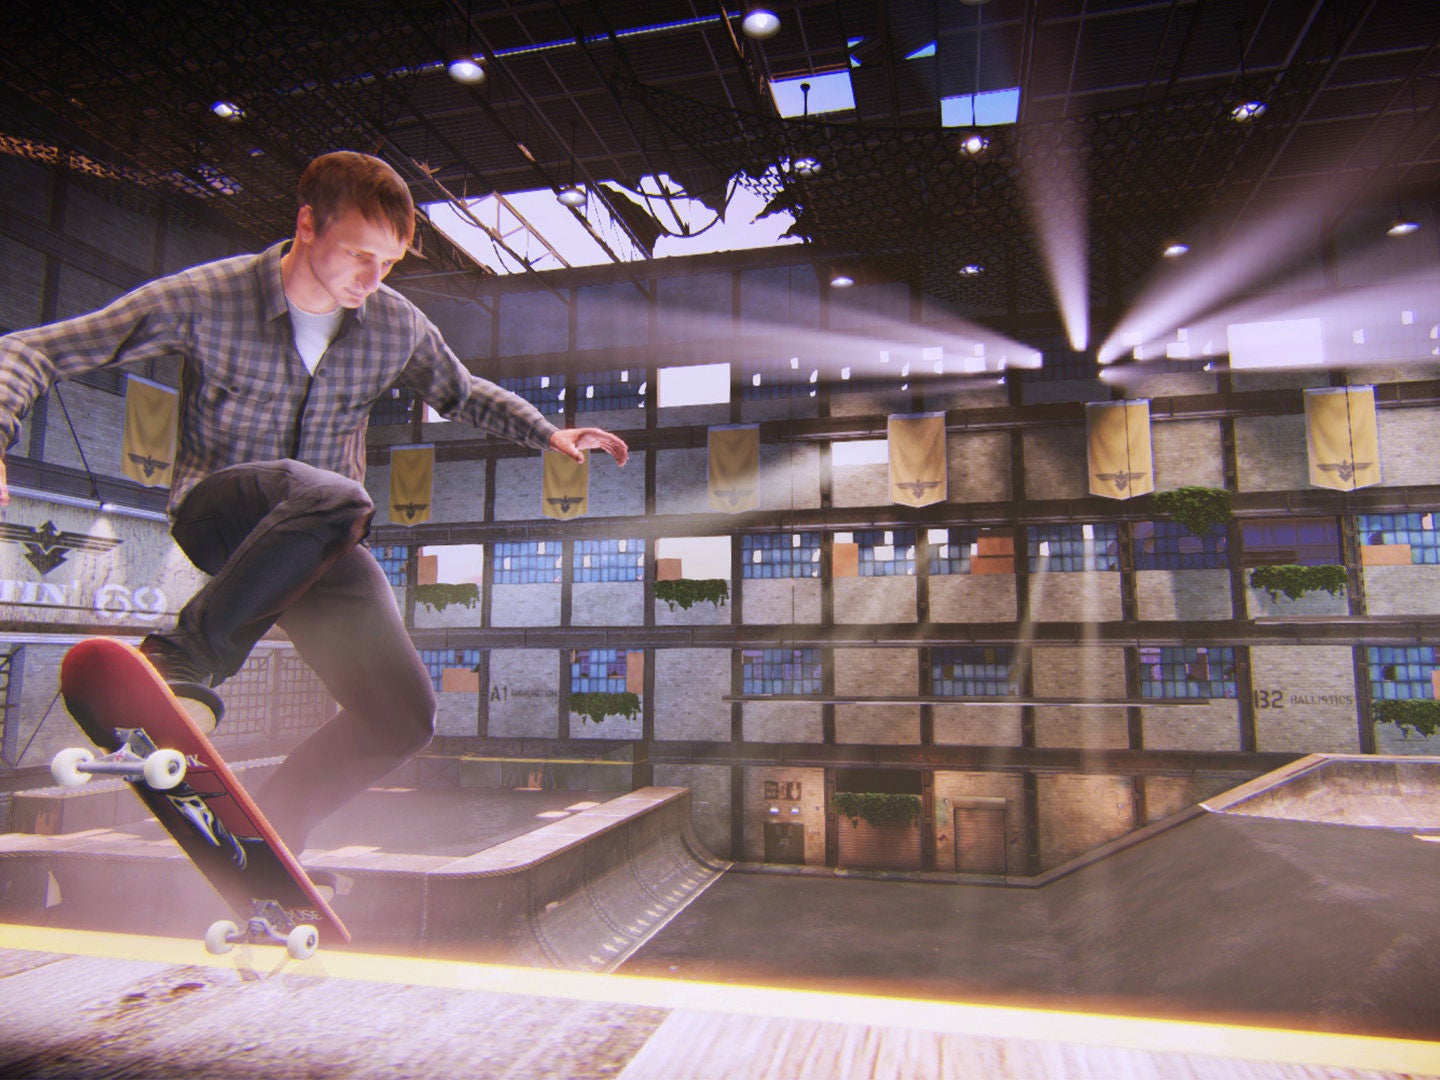 Tony Hawk's Pro Skater 5 - Xbox 360 